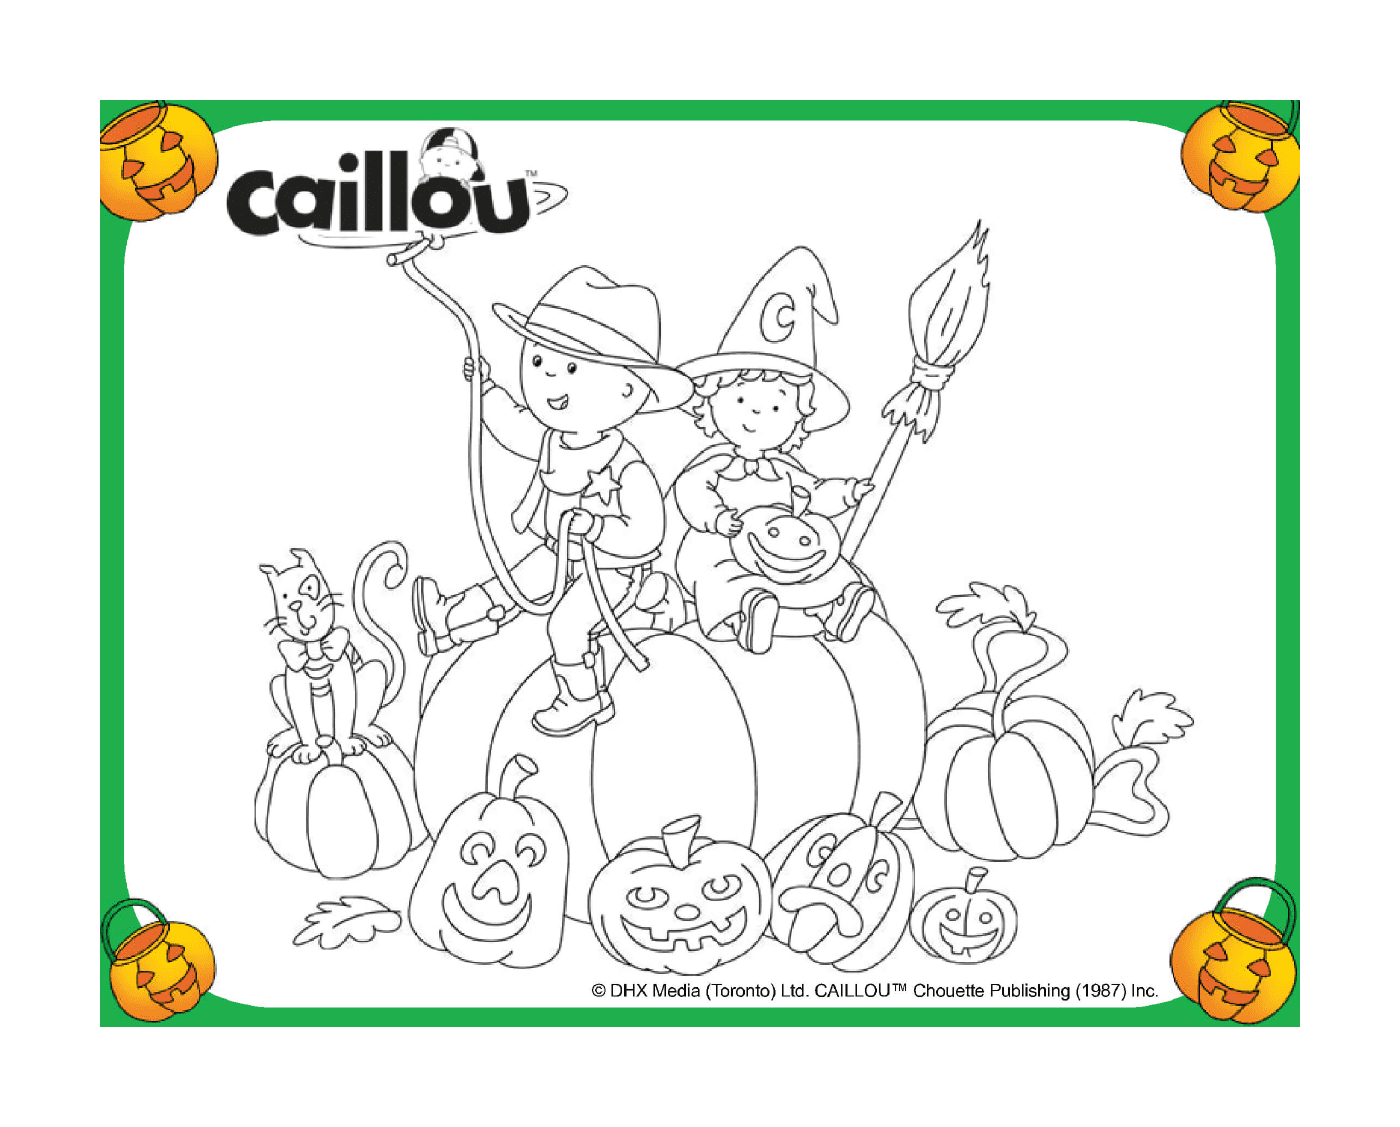  Caillou e Chiffon festeggiano Halloween su una zucca 